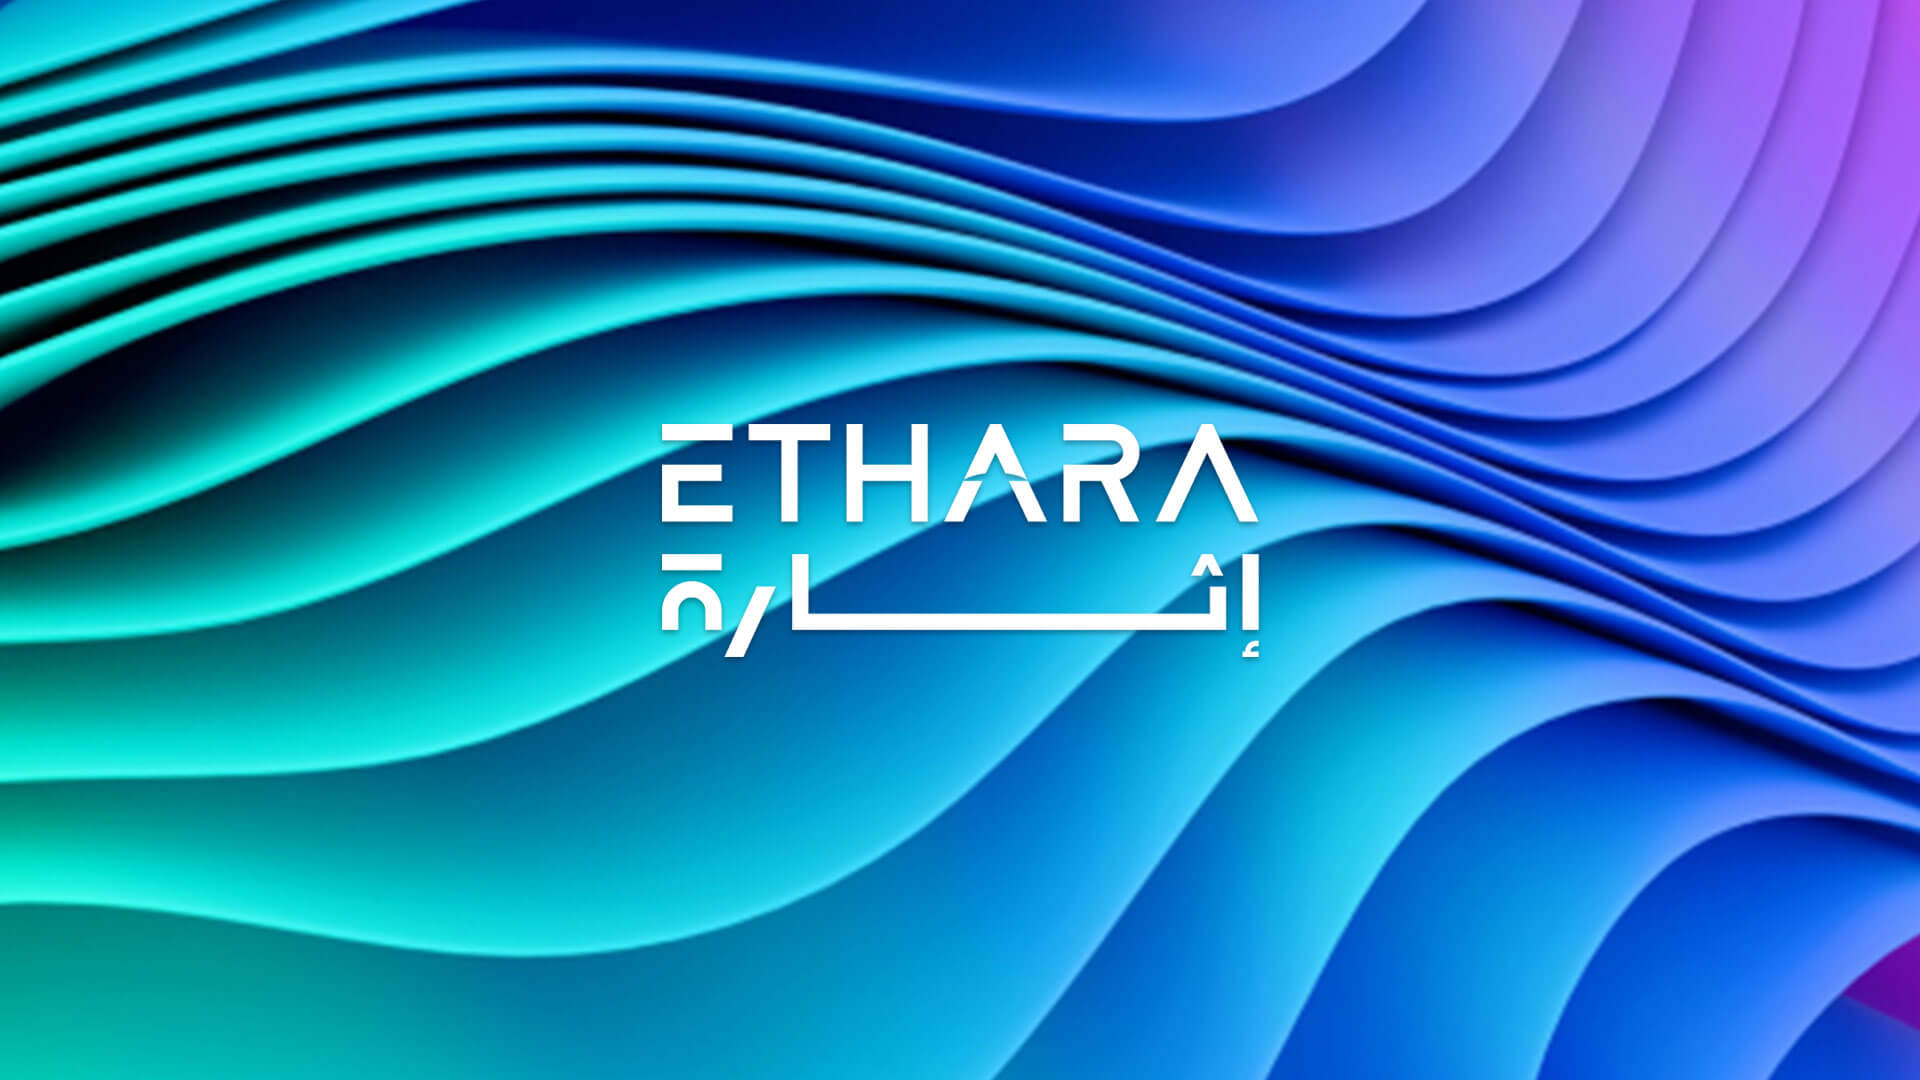 (c) Ethara.com